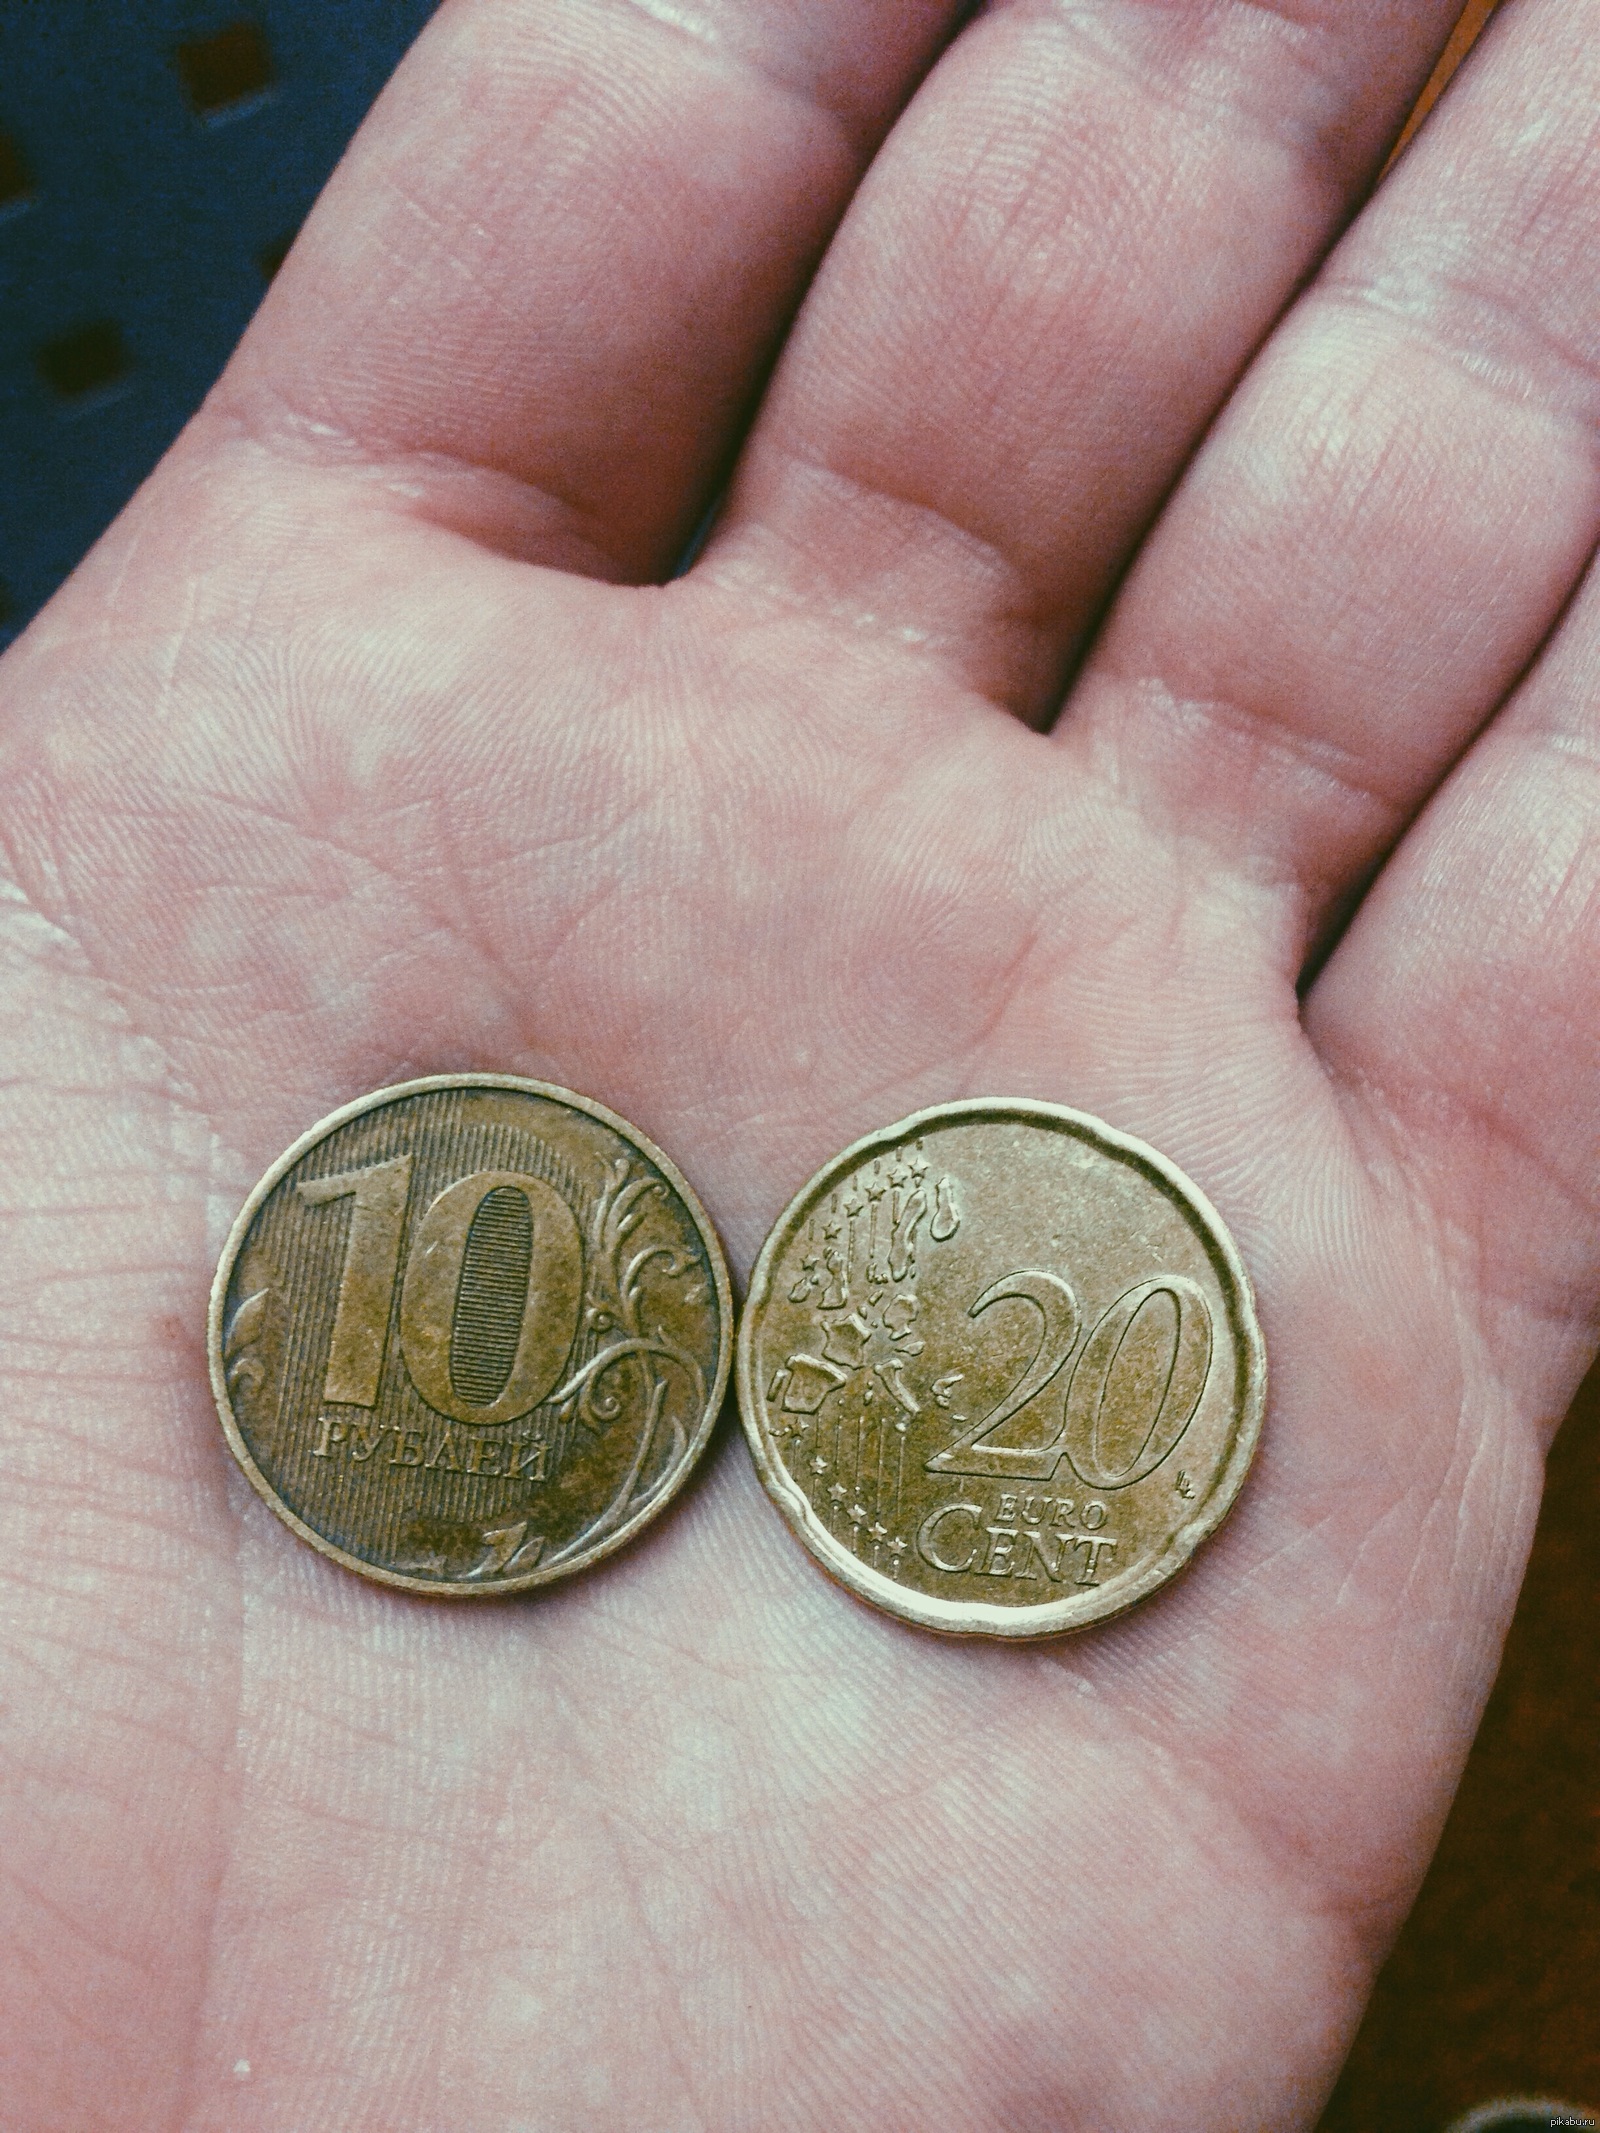 20 в рублях на сегодня. Монетка 20 евро цент в рублях. 20 Евро железная монета. 20 Cent Euro в рублях. 20 Евро цент в рублях.